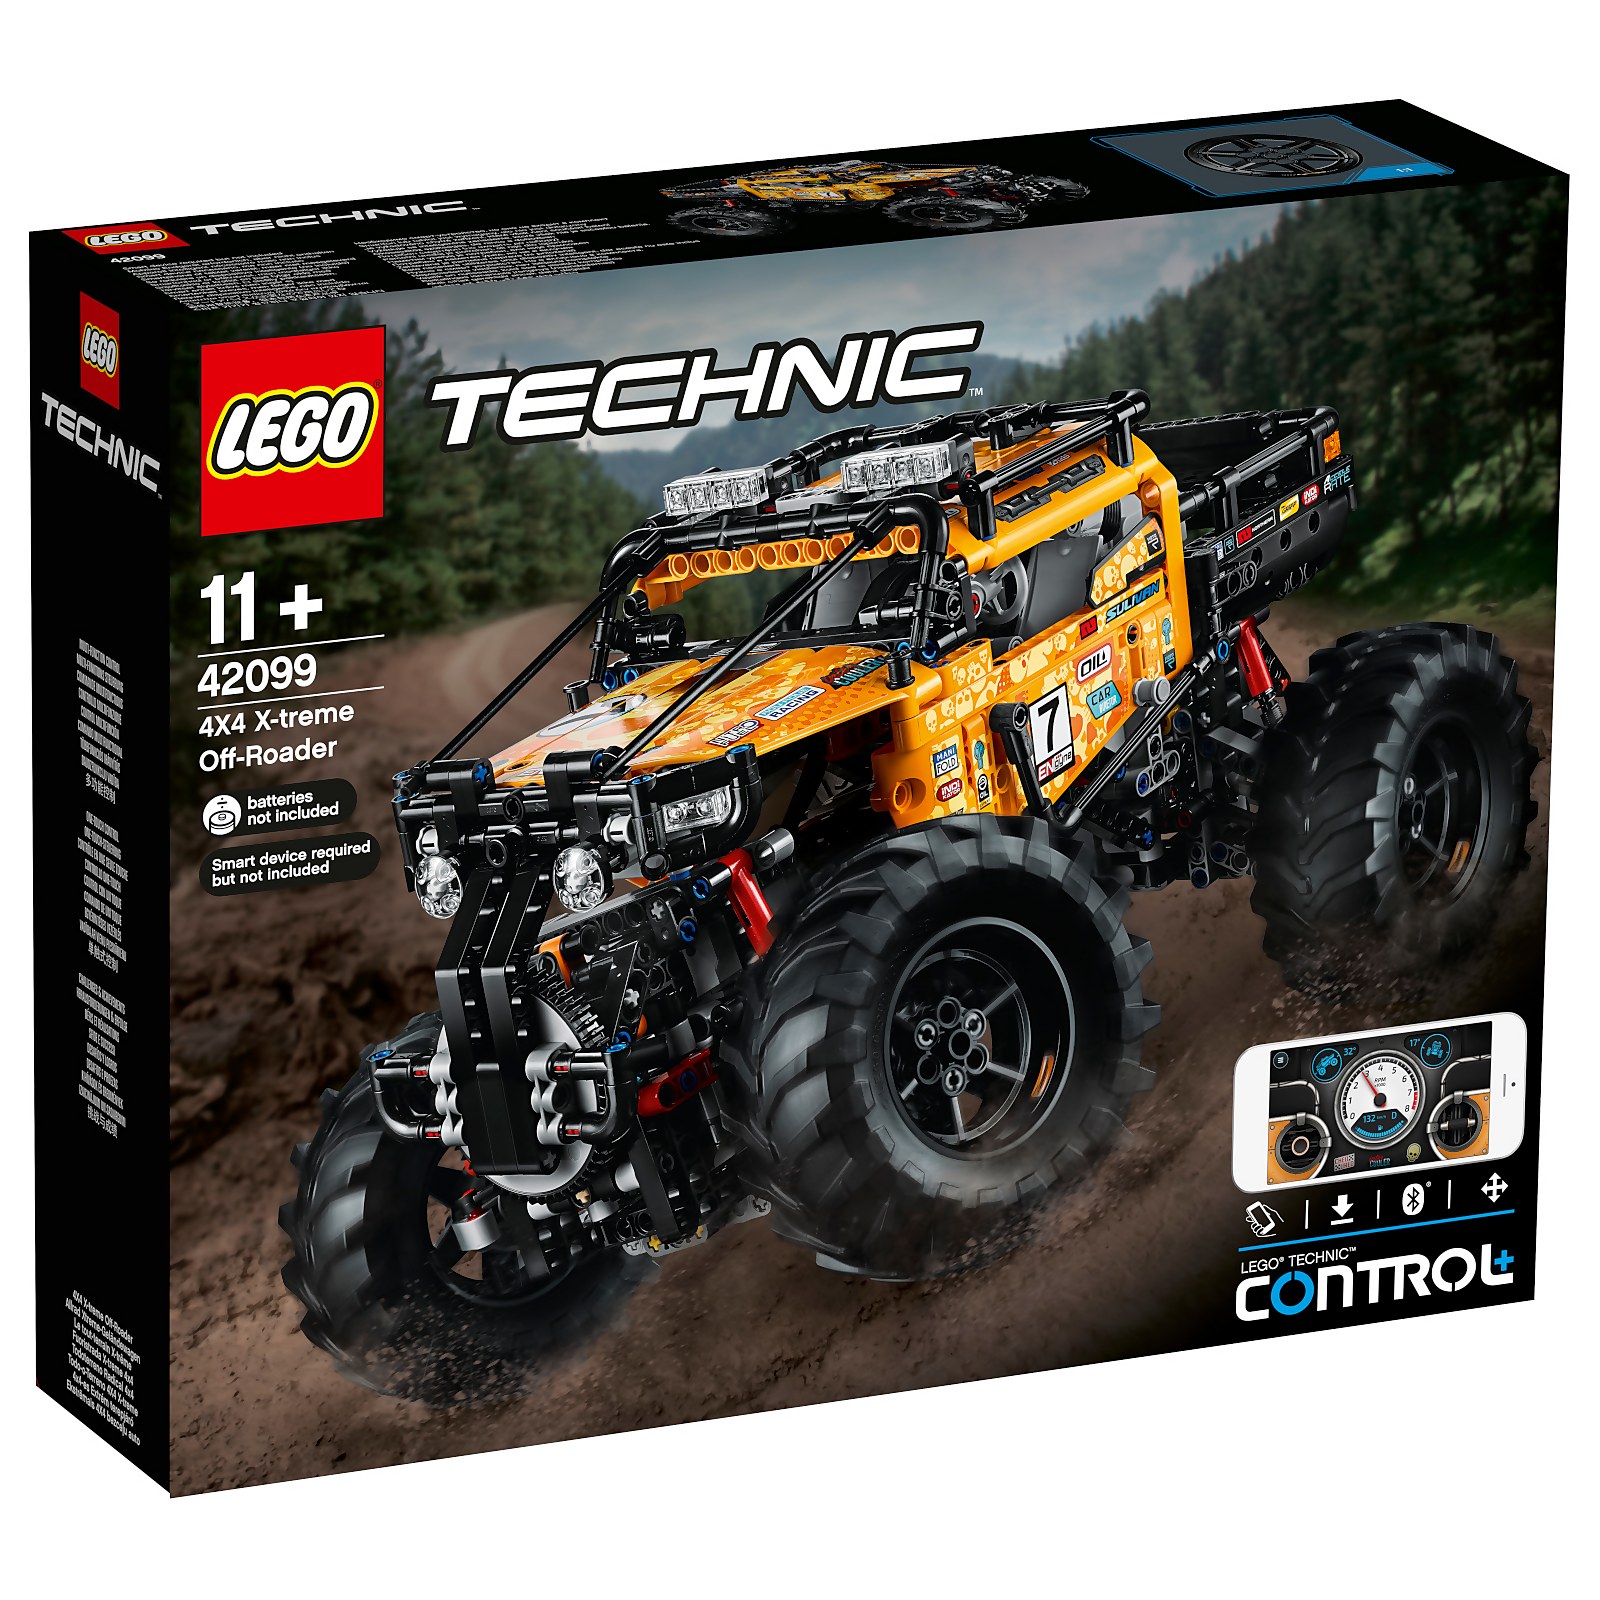 乐高科技系列LEGO Technic: Control+ 4x4 X-treme Off-Roader Truck Set (42099)